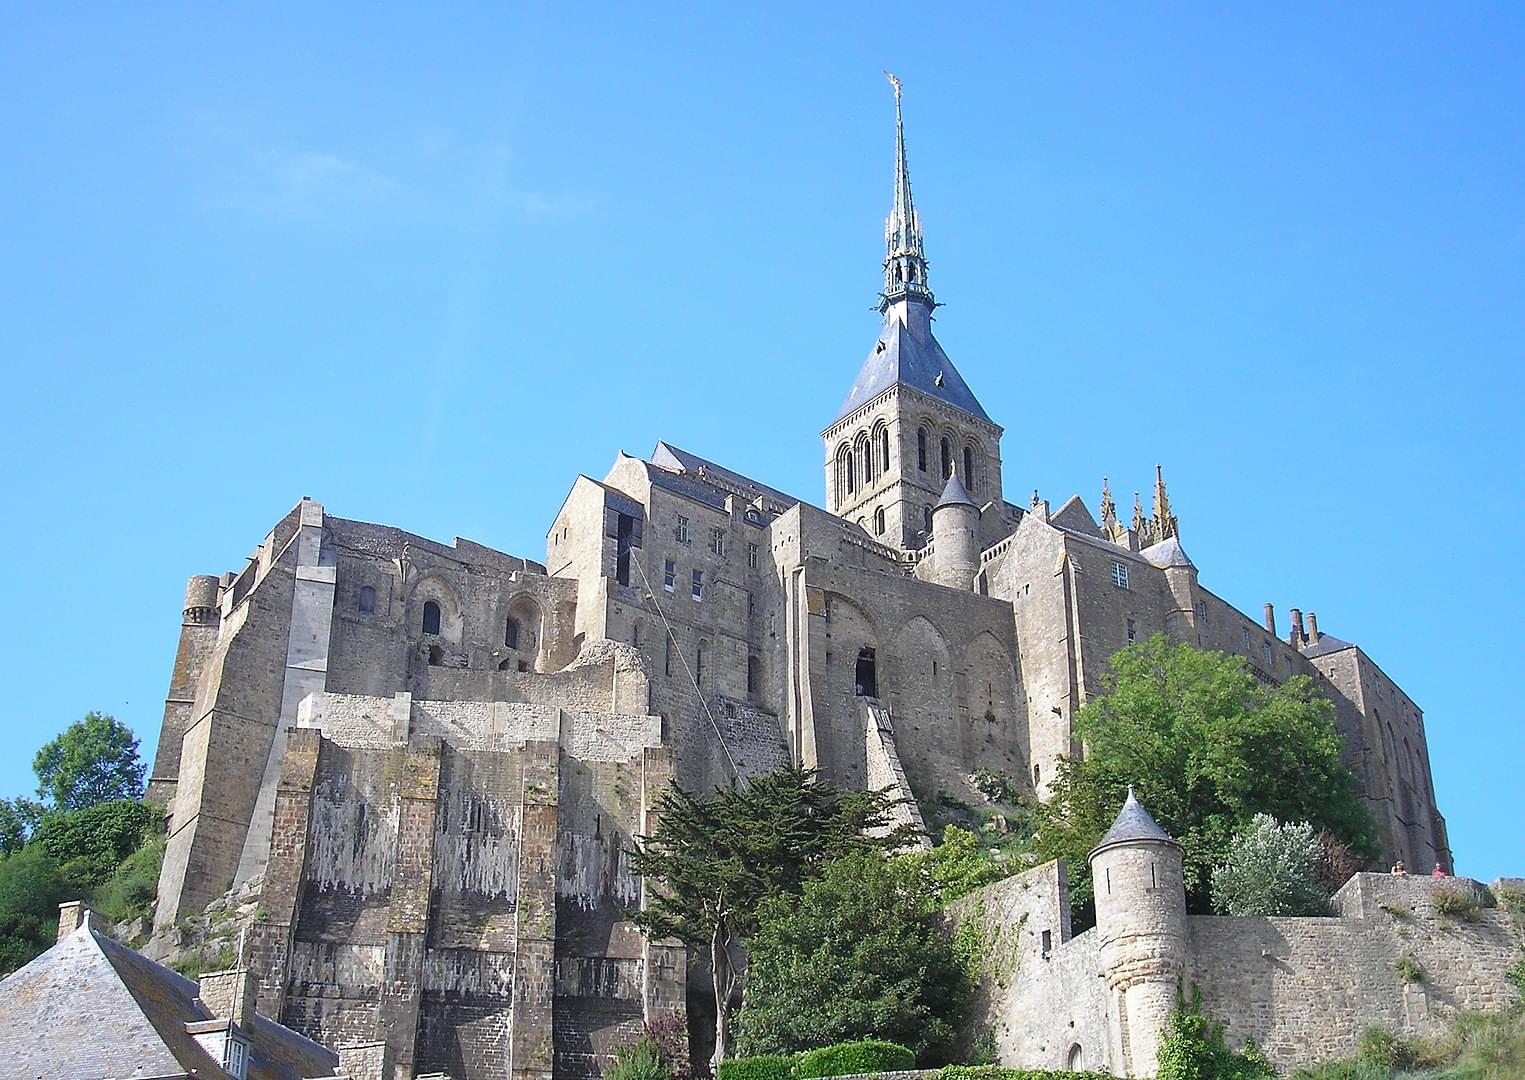 Explore Mont Saint Michel Abbey